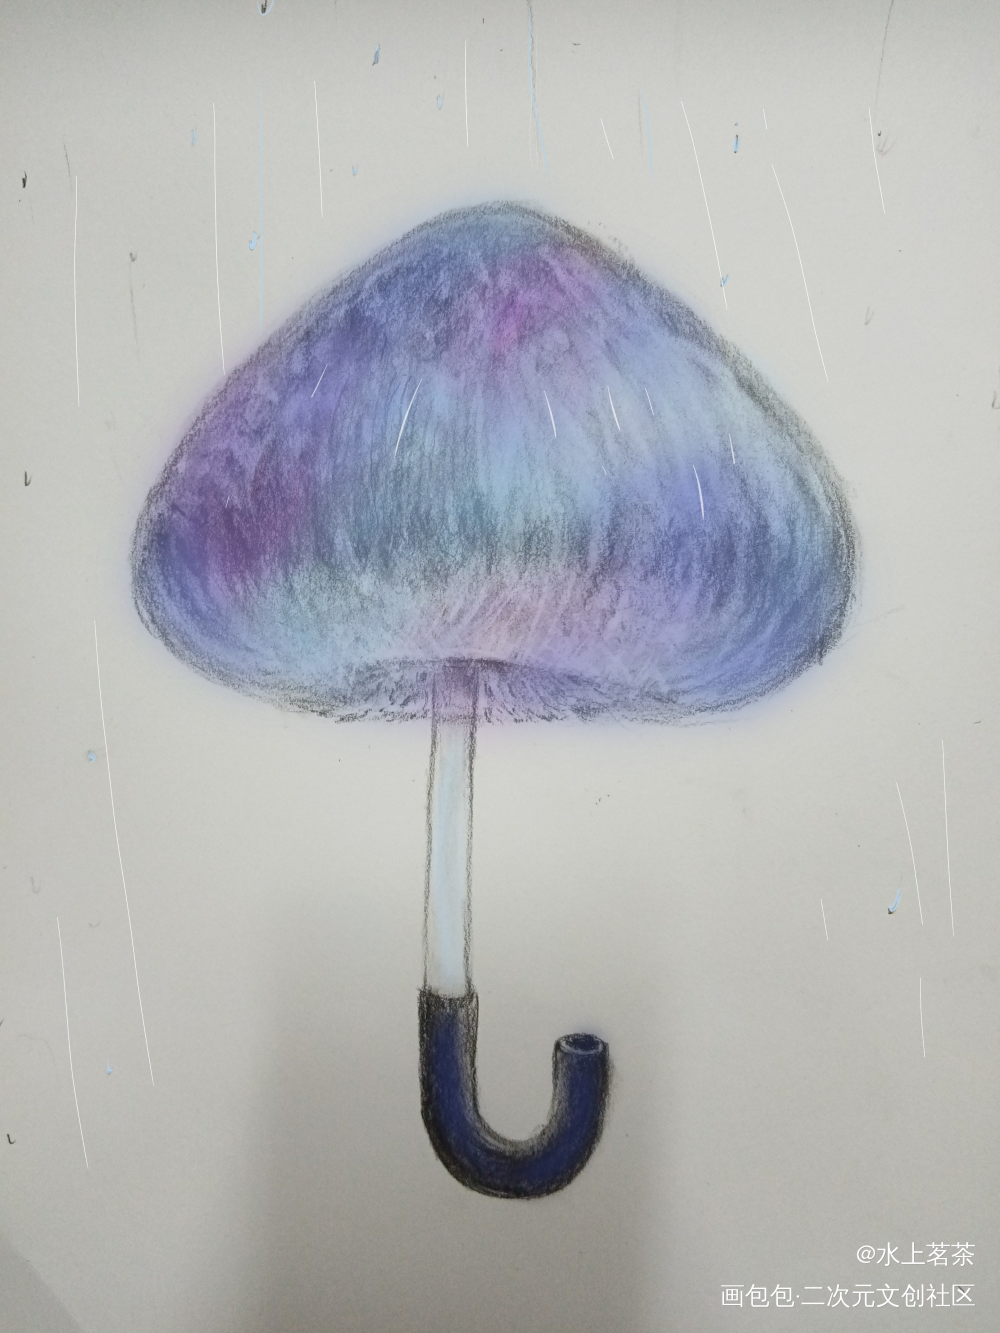 彩色蘑菇伞有微量毒素慎食